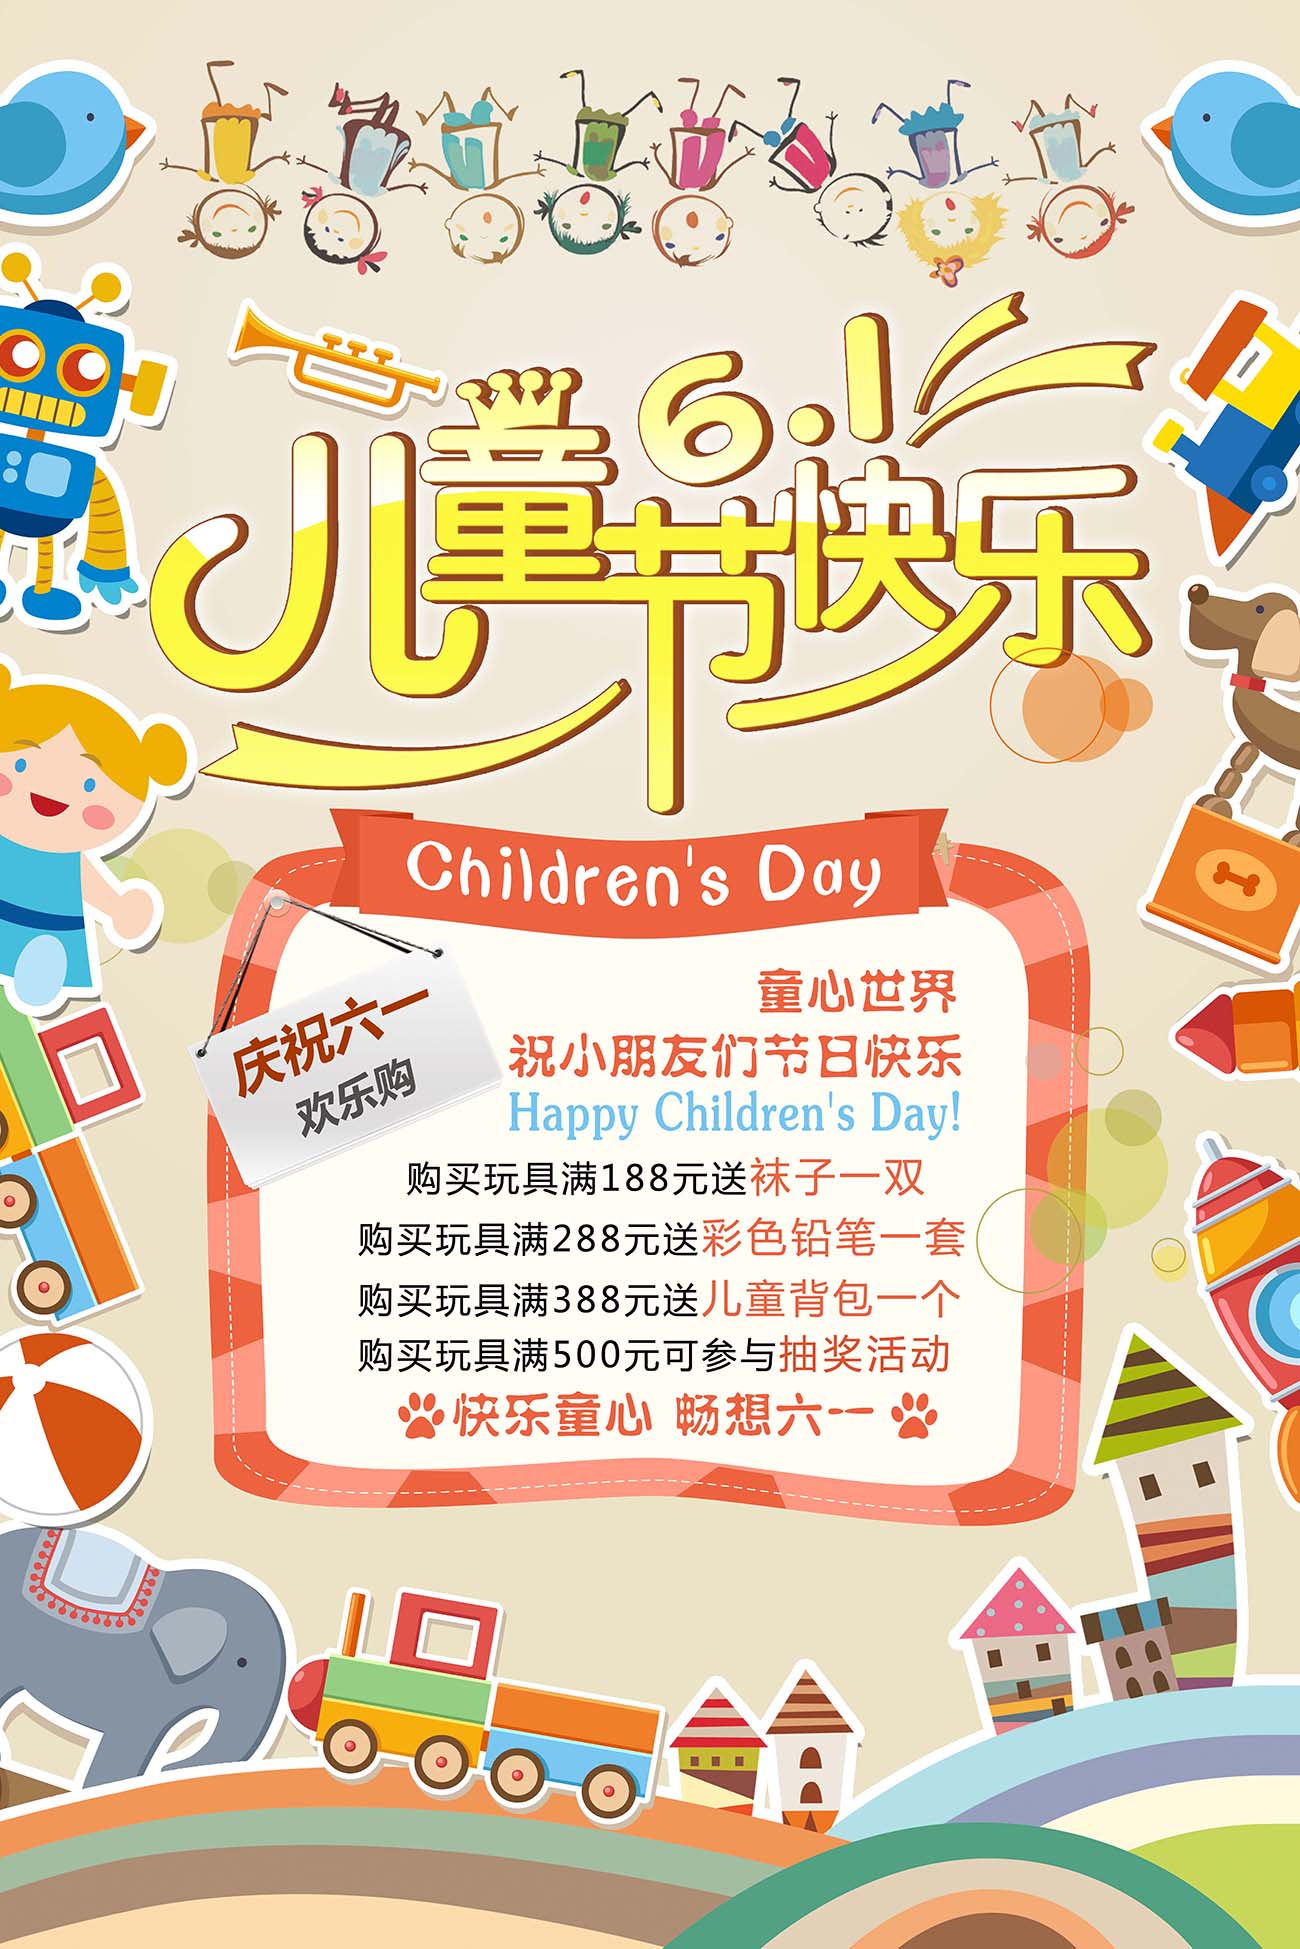 61六一儿童节快乐黄色风格促销海报设计PSD源文件